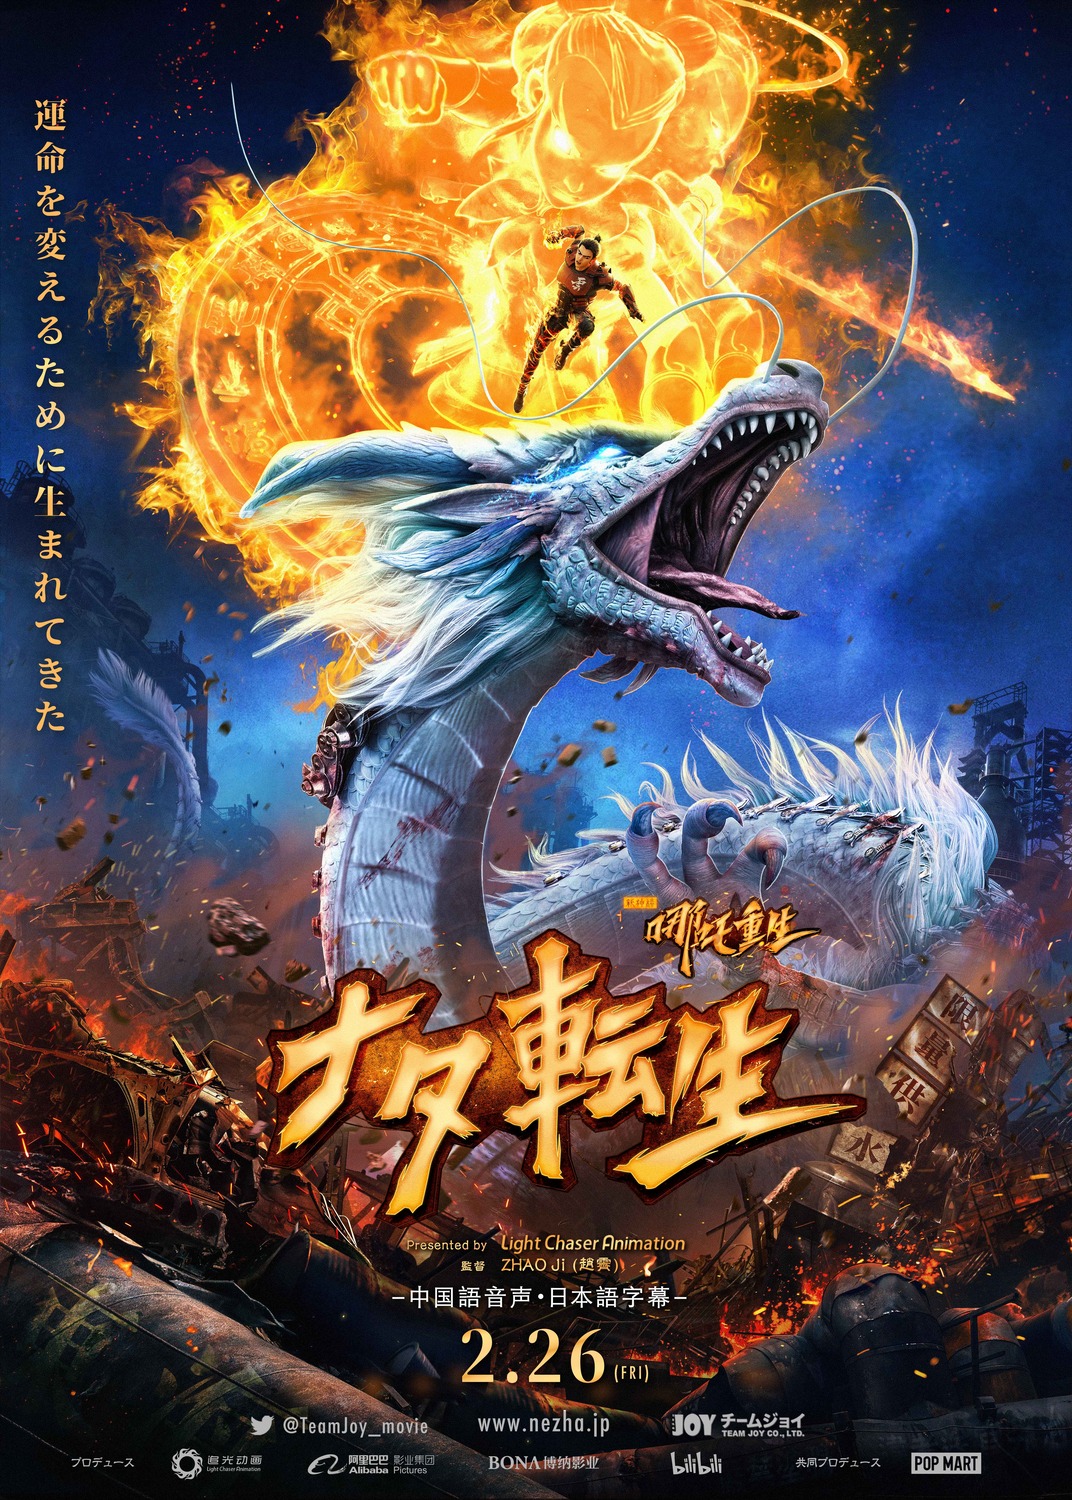 Extra Large Movie Poster Image for Xin Shen Bang: Ne Zha Chongsheng 